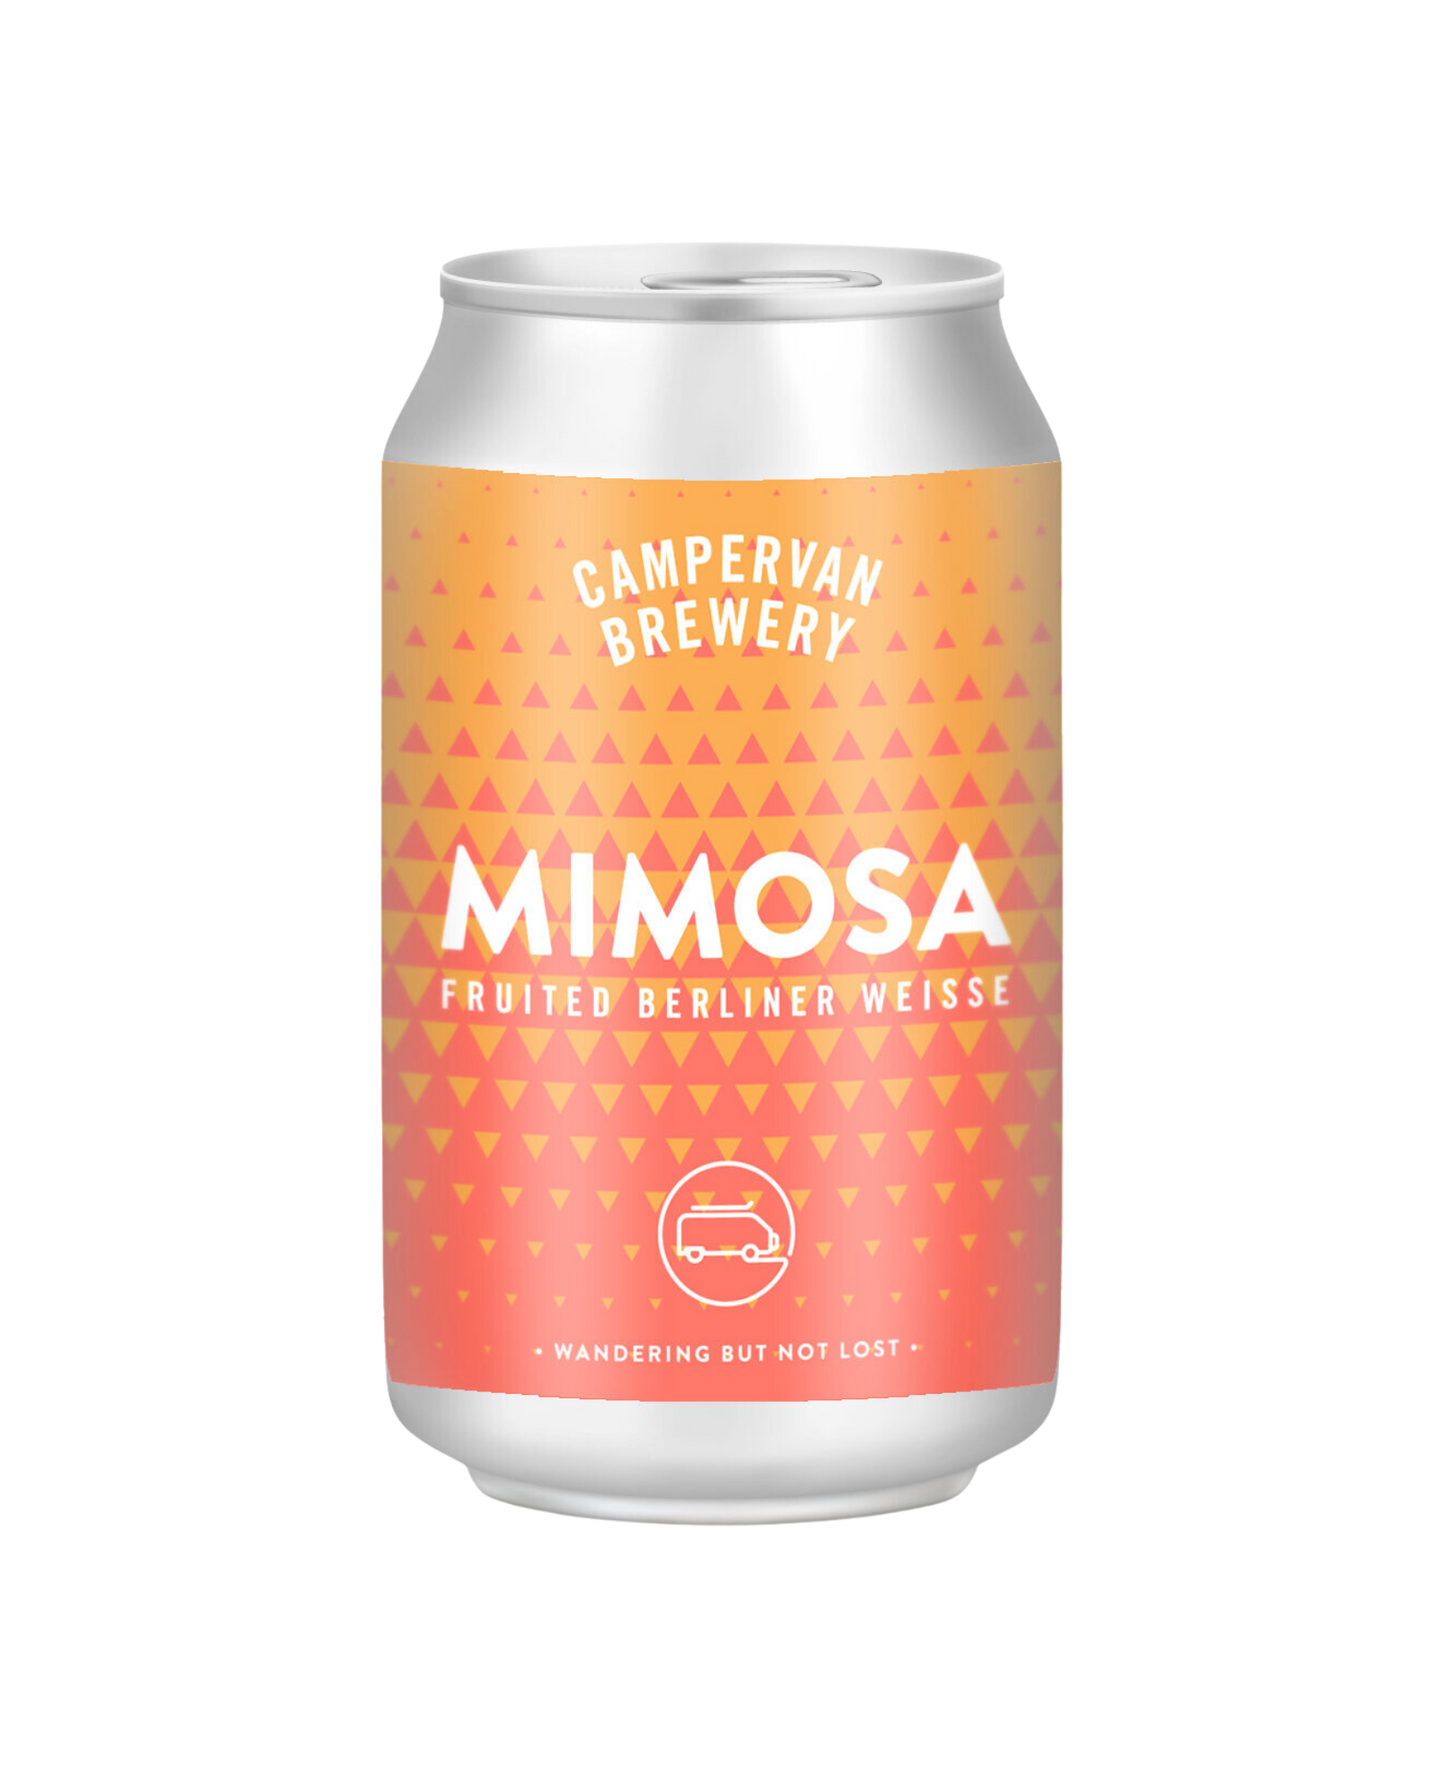 Campervan Brewery Mimosa